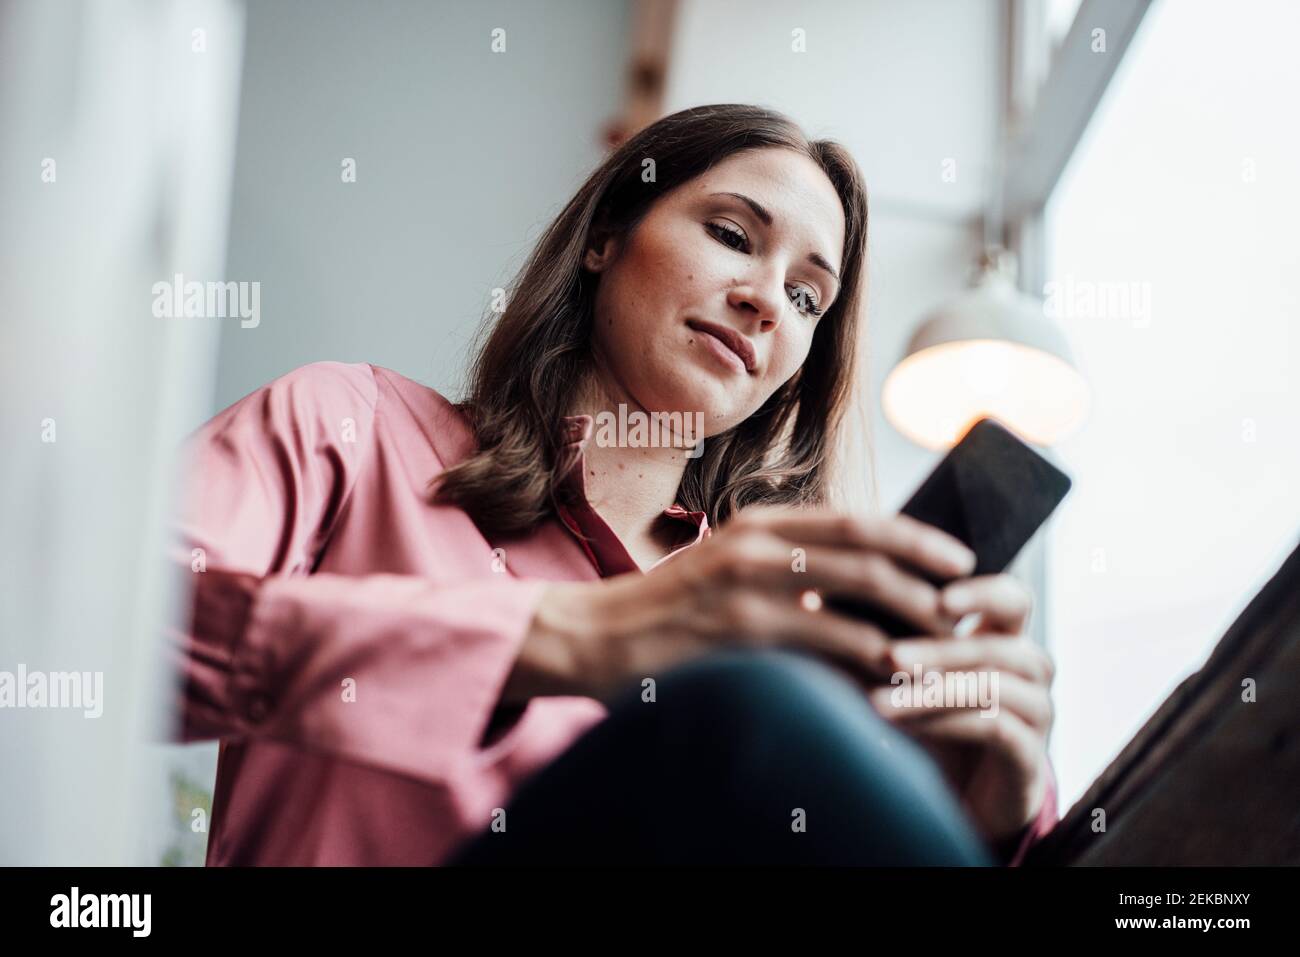 Employée indépendante utilisant un téléphone portable lorsqu'elle est assise dans un café Banque D'Images